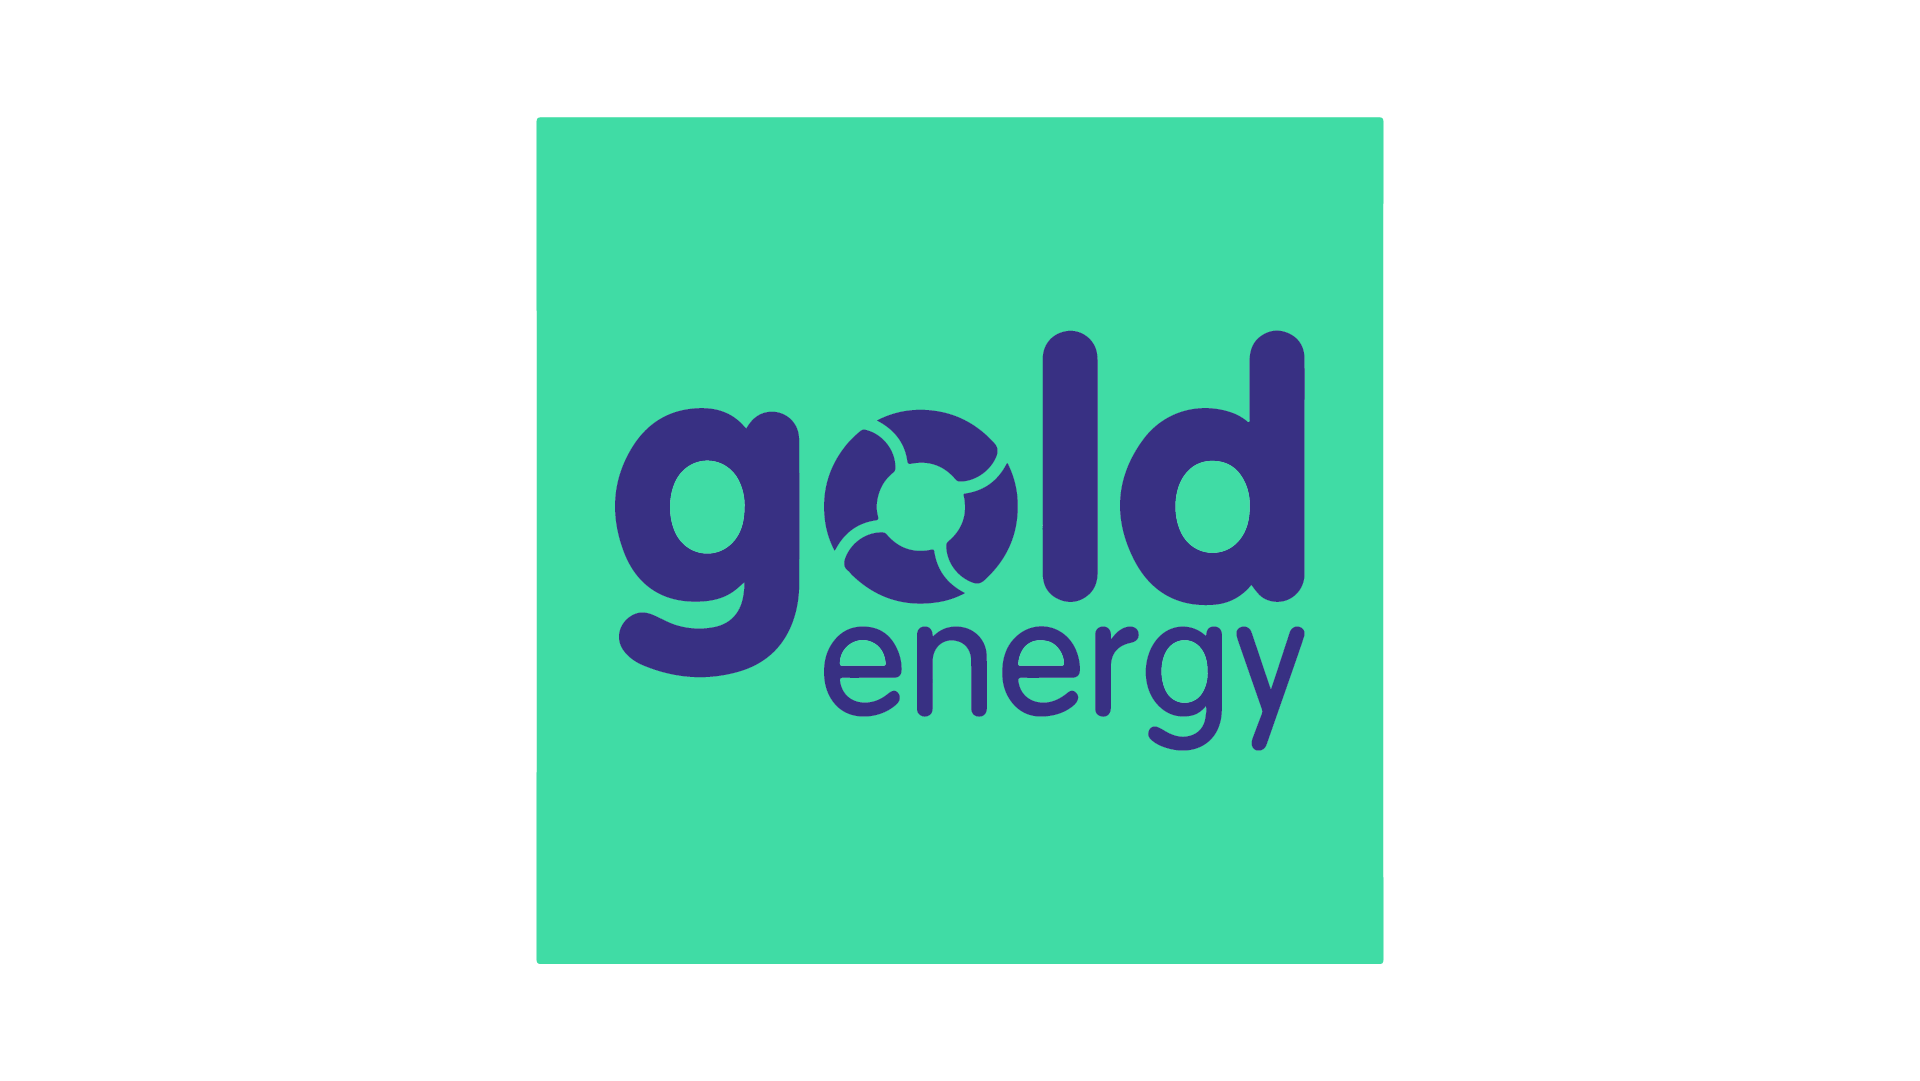 Gold energy Brand Logo